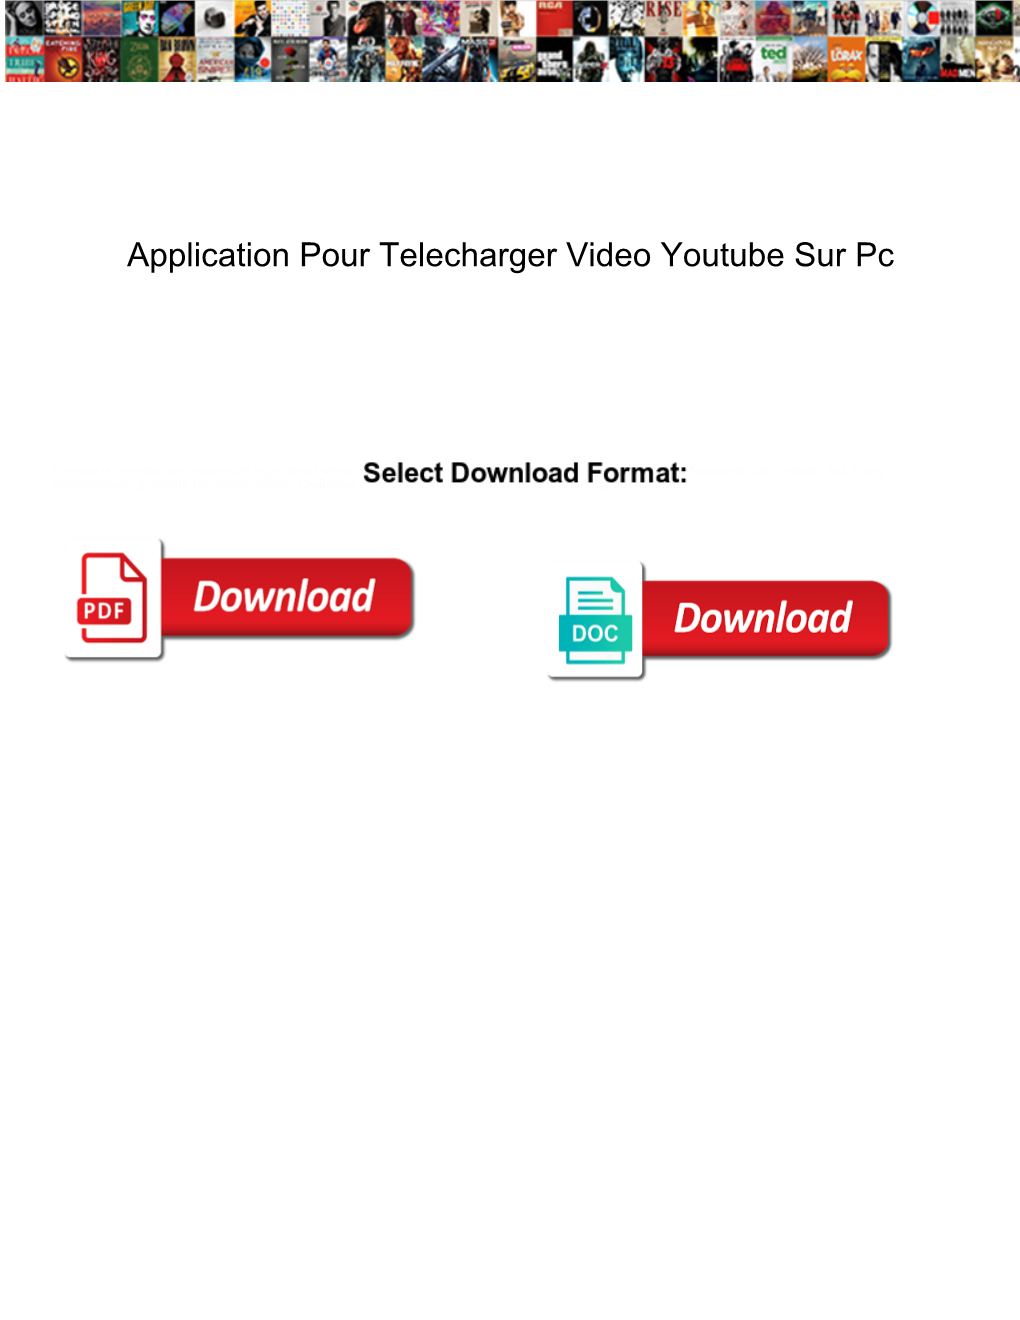 Application Pour Telecharger Video Youtube Sur Pc